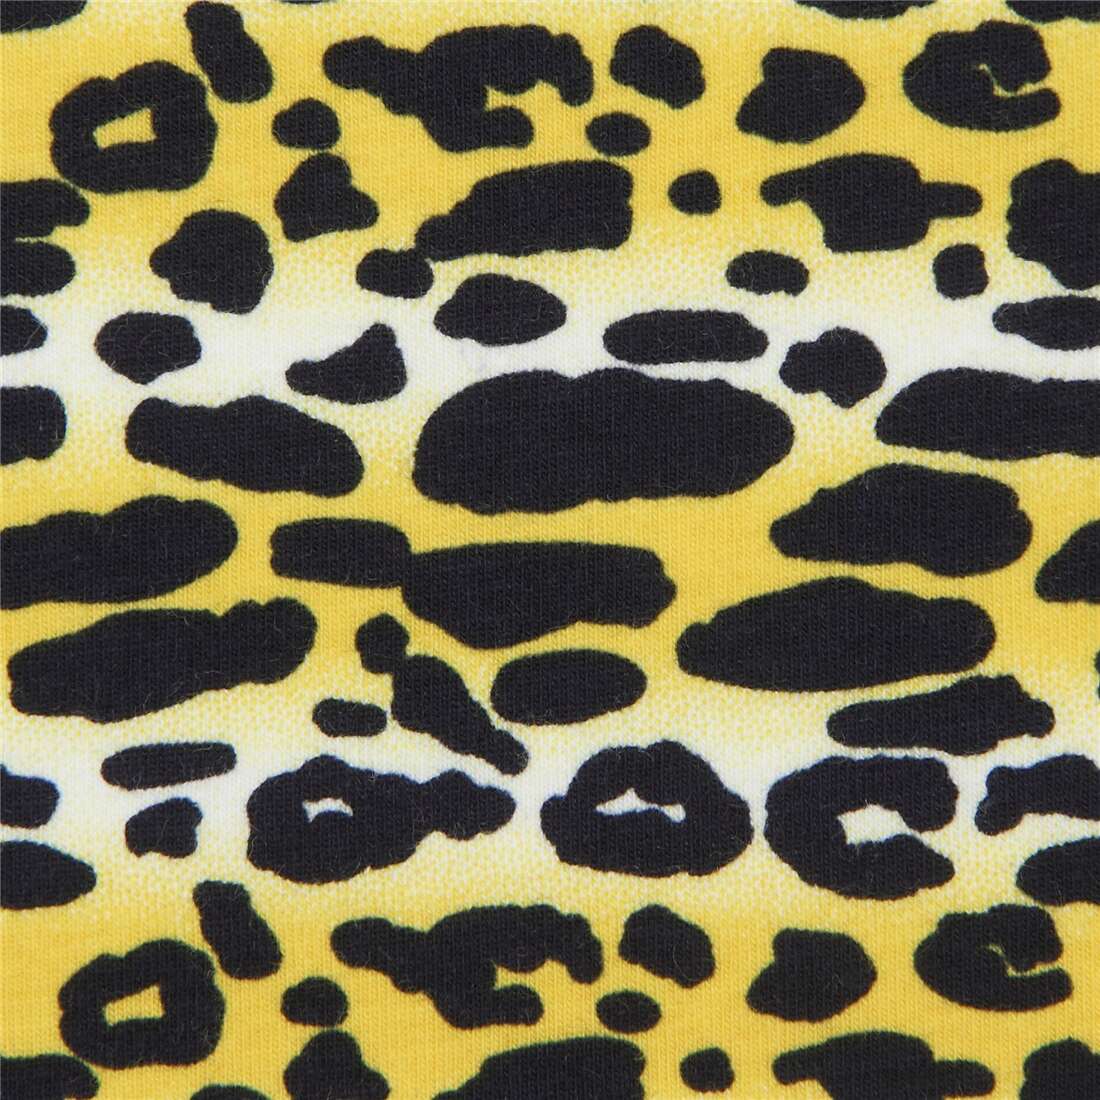 yellow zebra print wallpaper